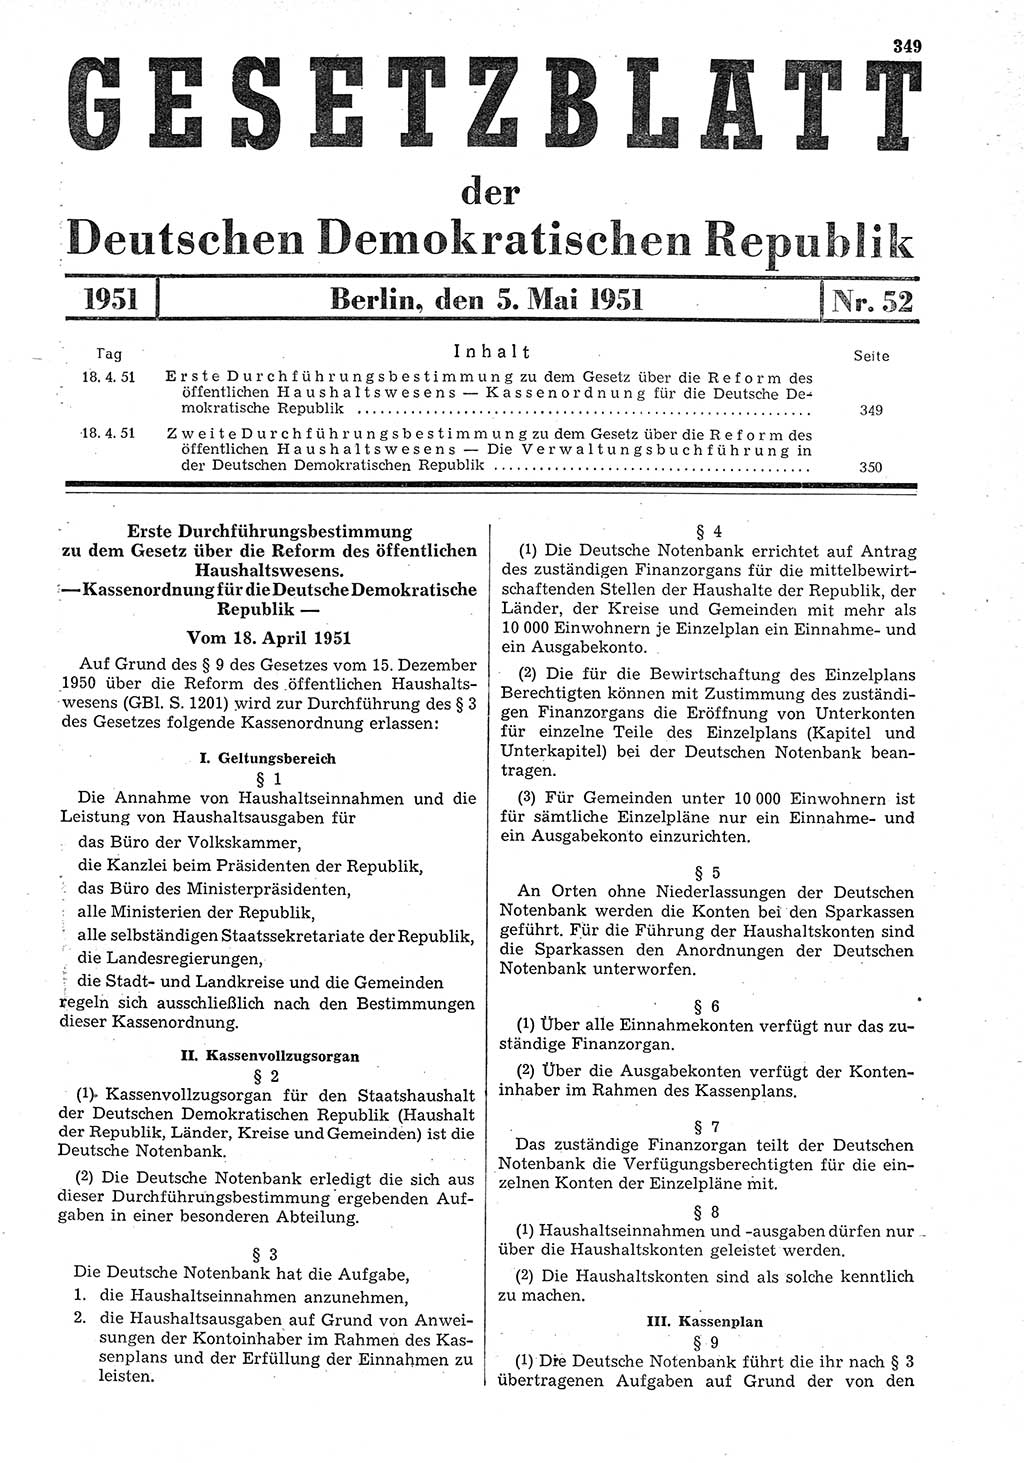 Gesetzblatt (GBl.) der Deutschen Demokratischen Republik (DDR) 1951, Seite 349 (GBl. DDR 1951, S. 349)